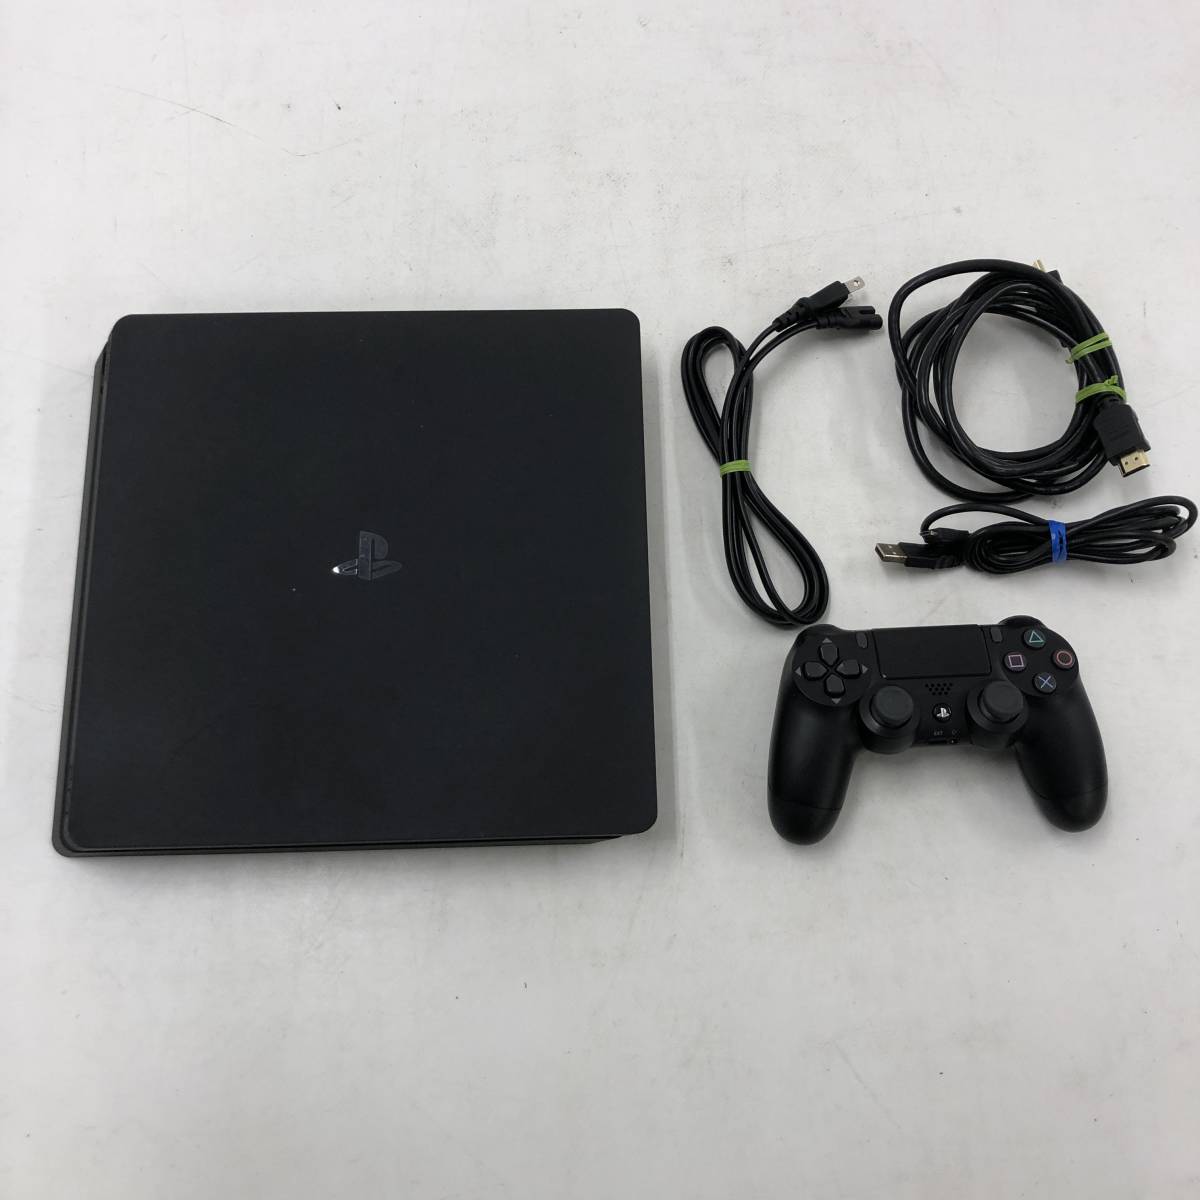 PlayStation®4 ジェット・ブラック 500GB CUH-2000A… 家庭用ゲーム本体 銀座販売中